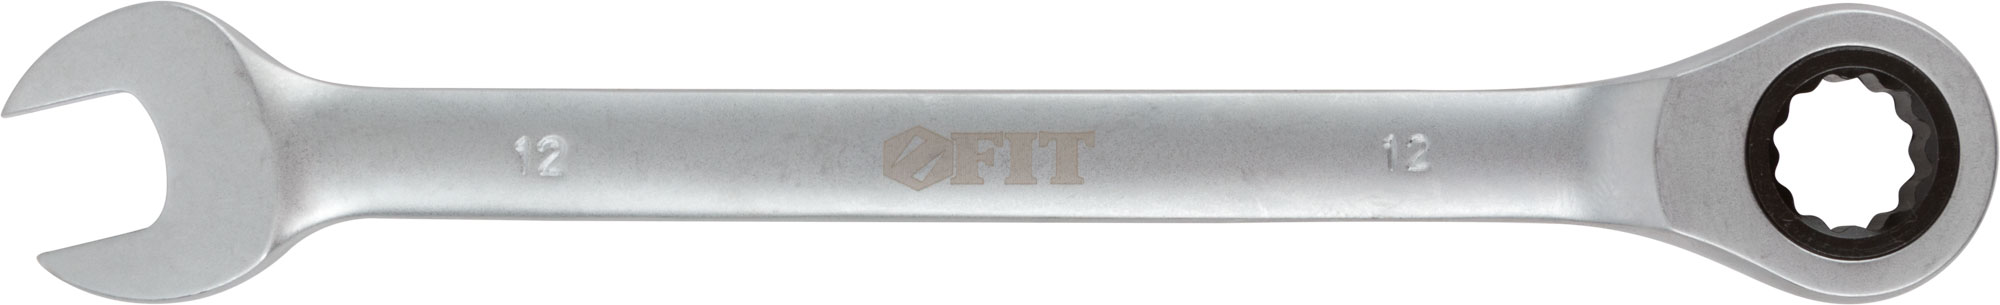 Ключ комбинированный трещоточный, 12 мм. FIT 63462 трещоточный реверсивный комбинированный ключ hortz